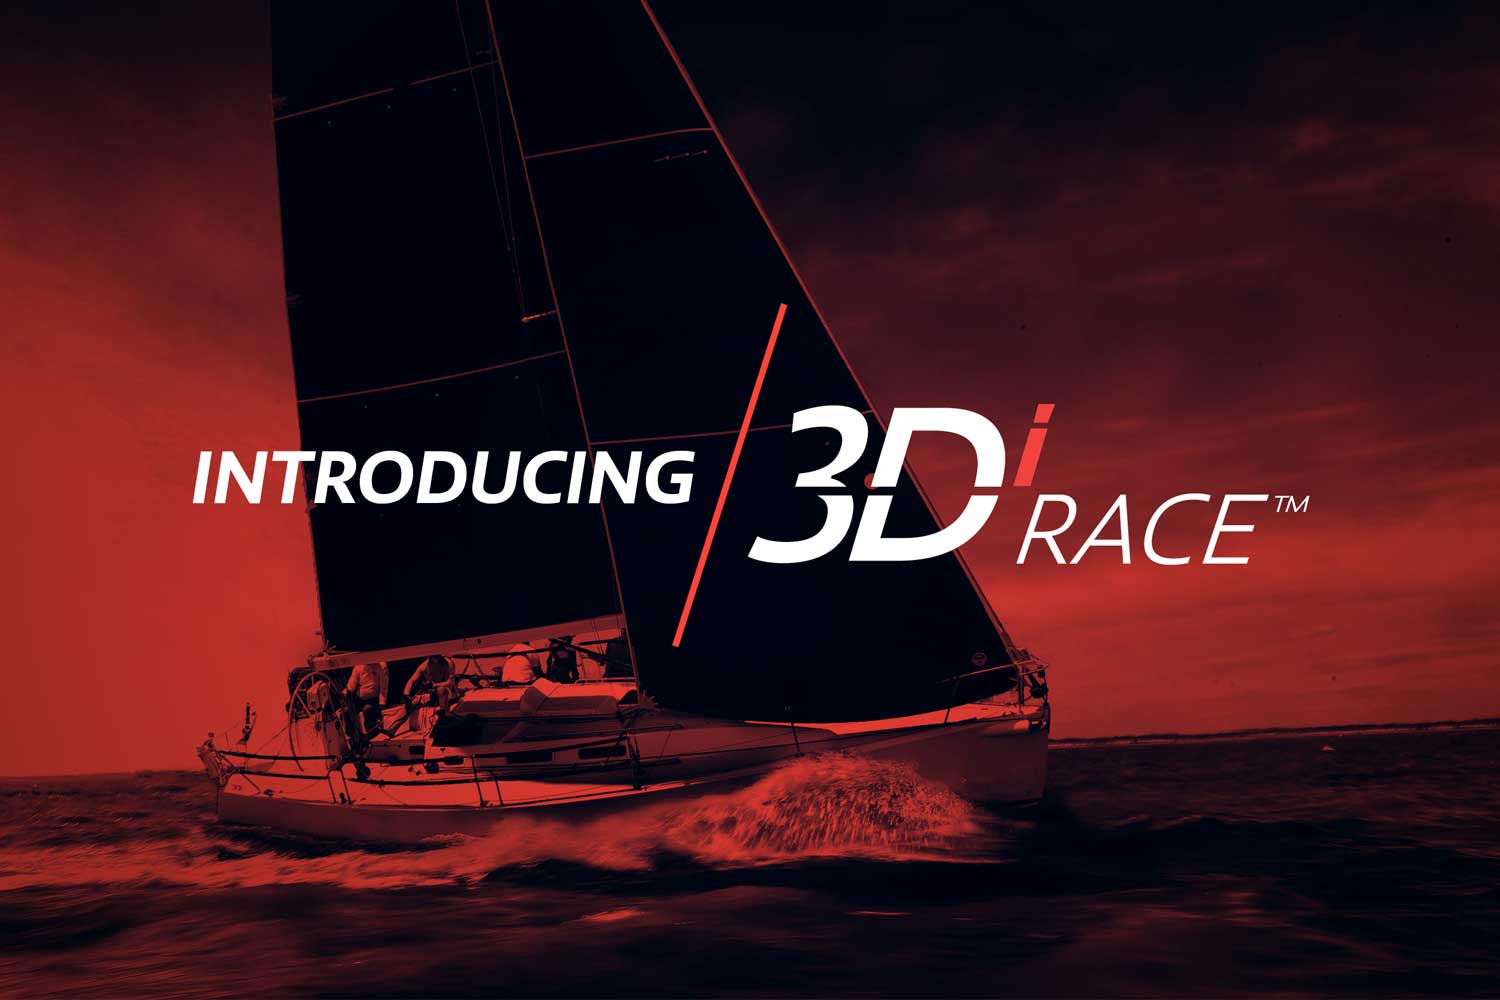 North lanserar 3Di Race